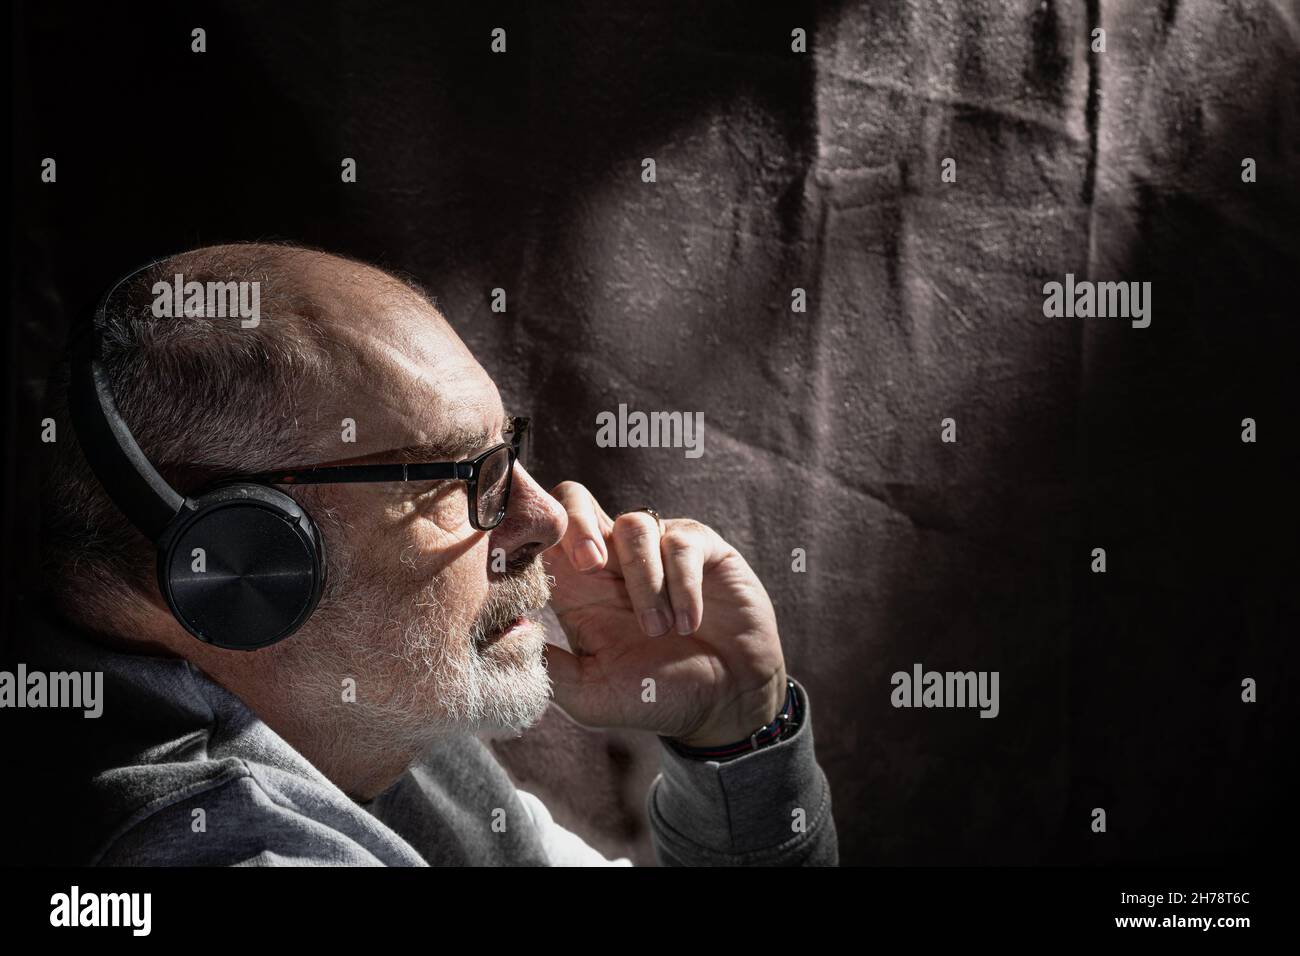 Ritratto a basso profilo dei tasti di un maschio dai capelli grigi che ascolta la musica attraverso i telefoni della testa Foto Stock